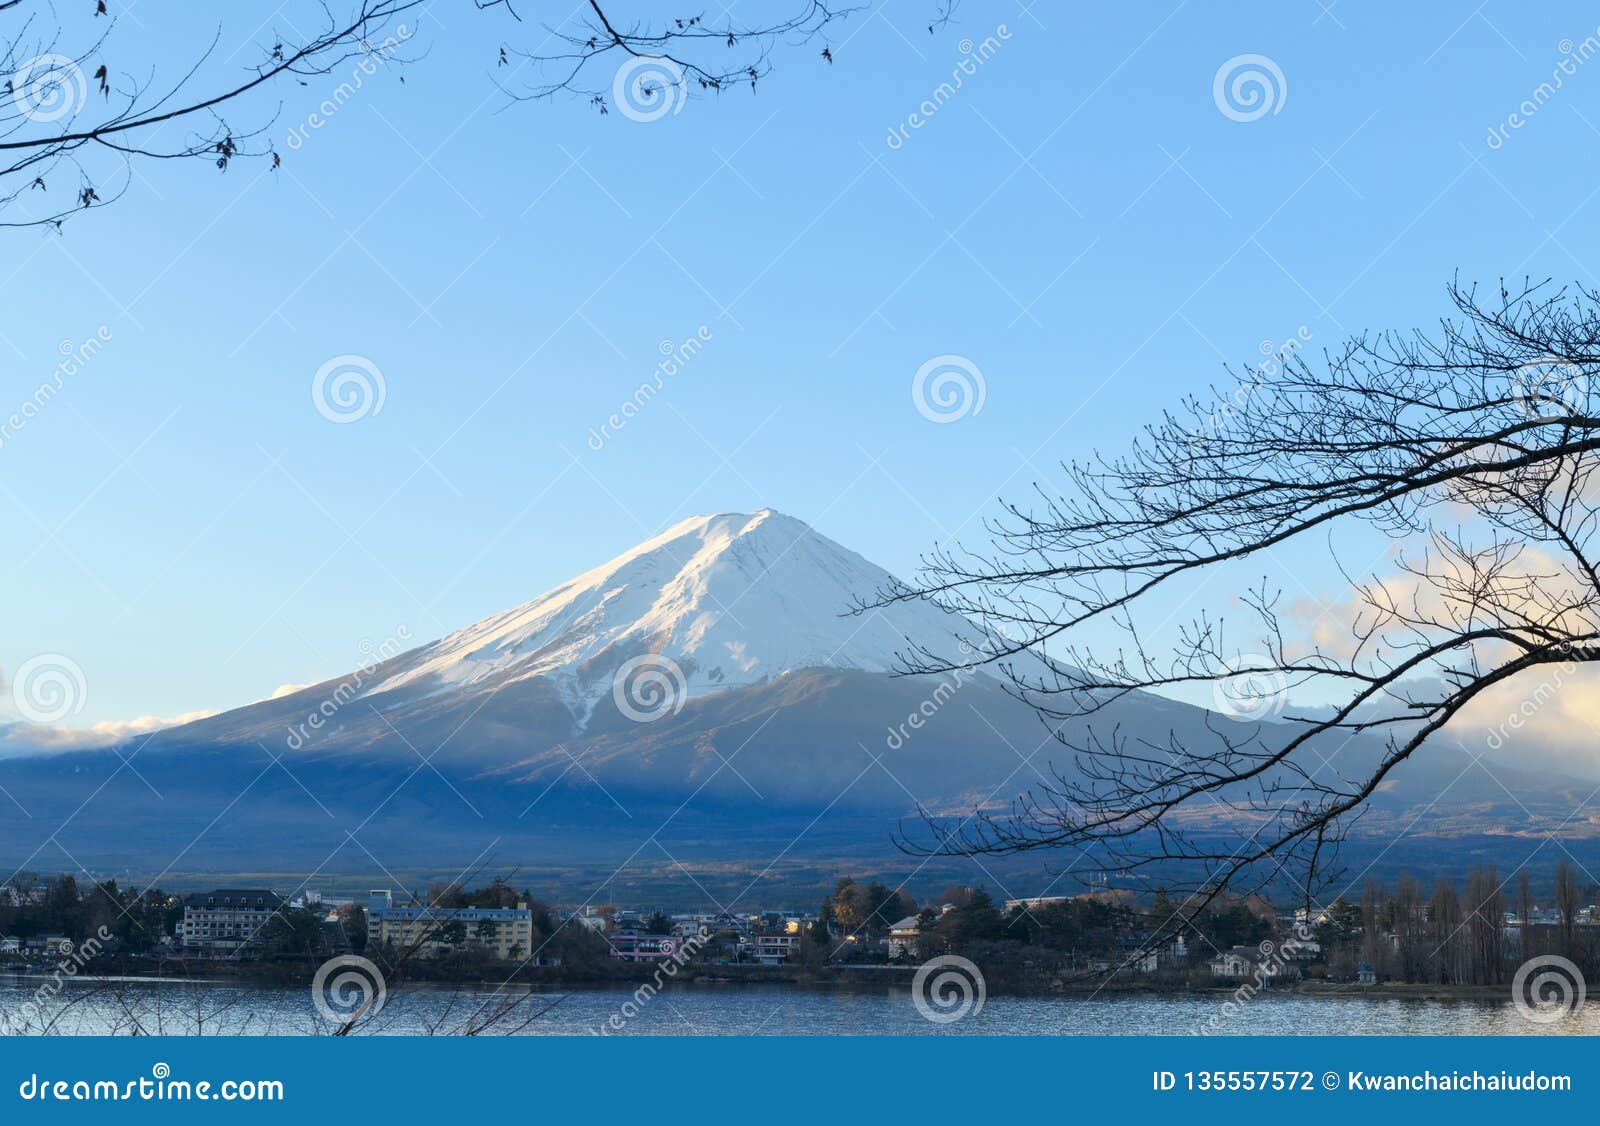 富士山(Mt. Fuji)山中湖から見た朝日に染まる富士山【絶景NIPPON】2013年6月に世界文化遺産に登録。#富士山 #MtFuji ...